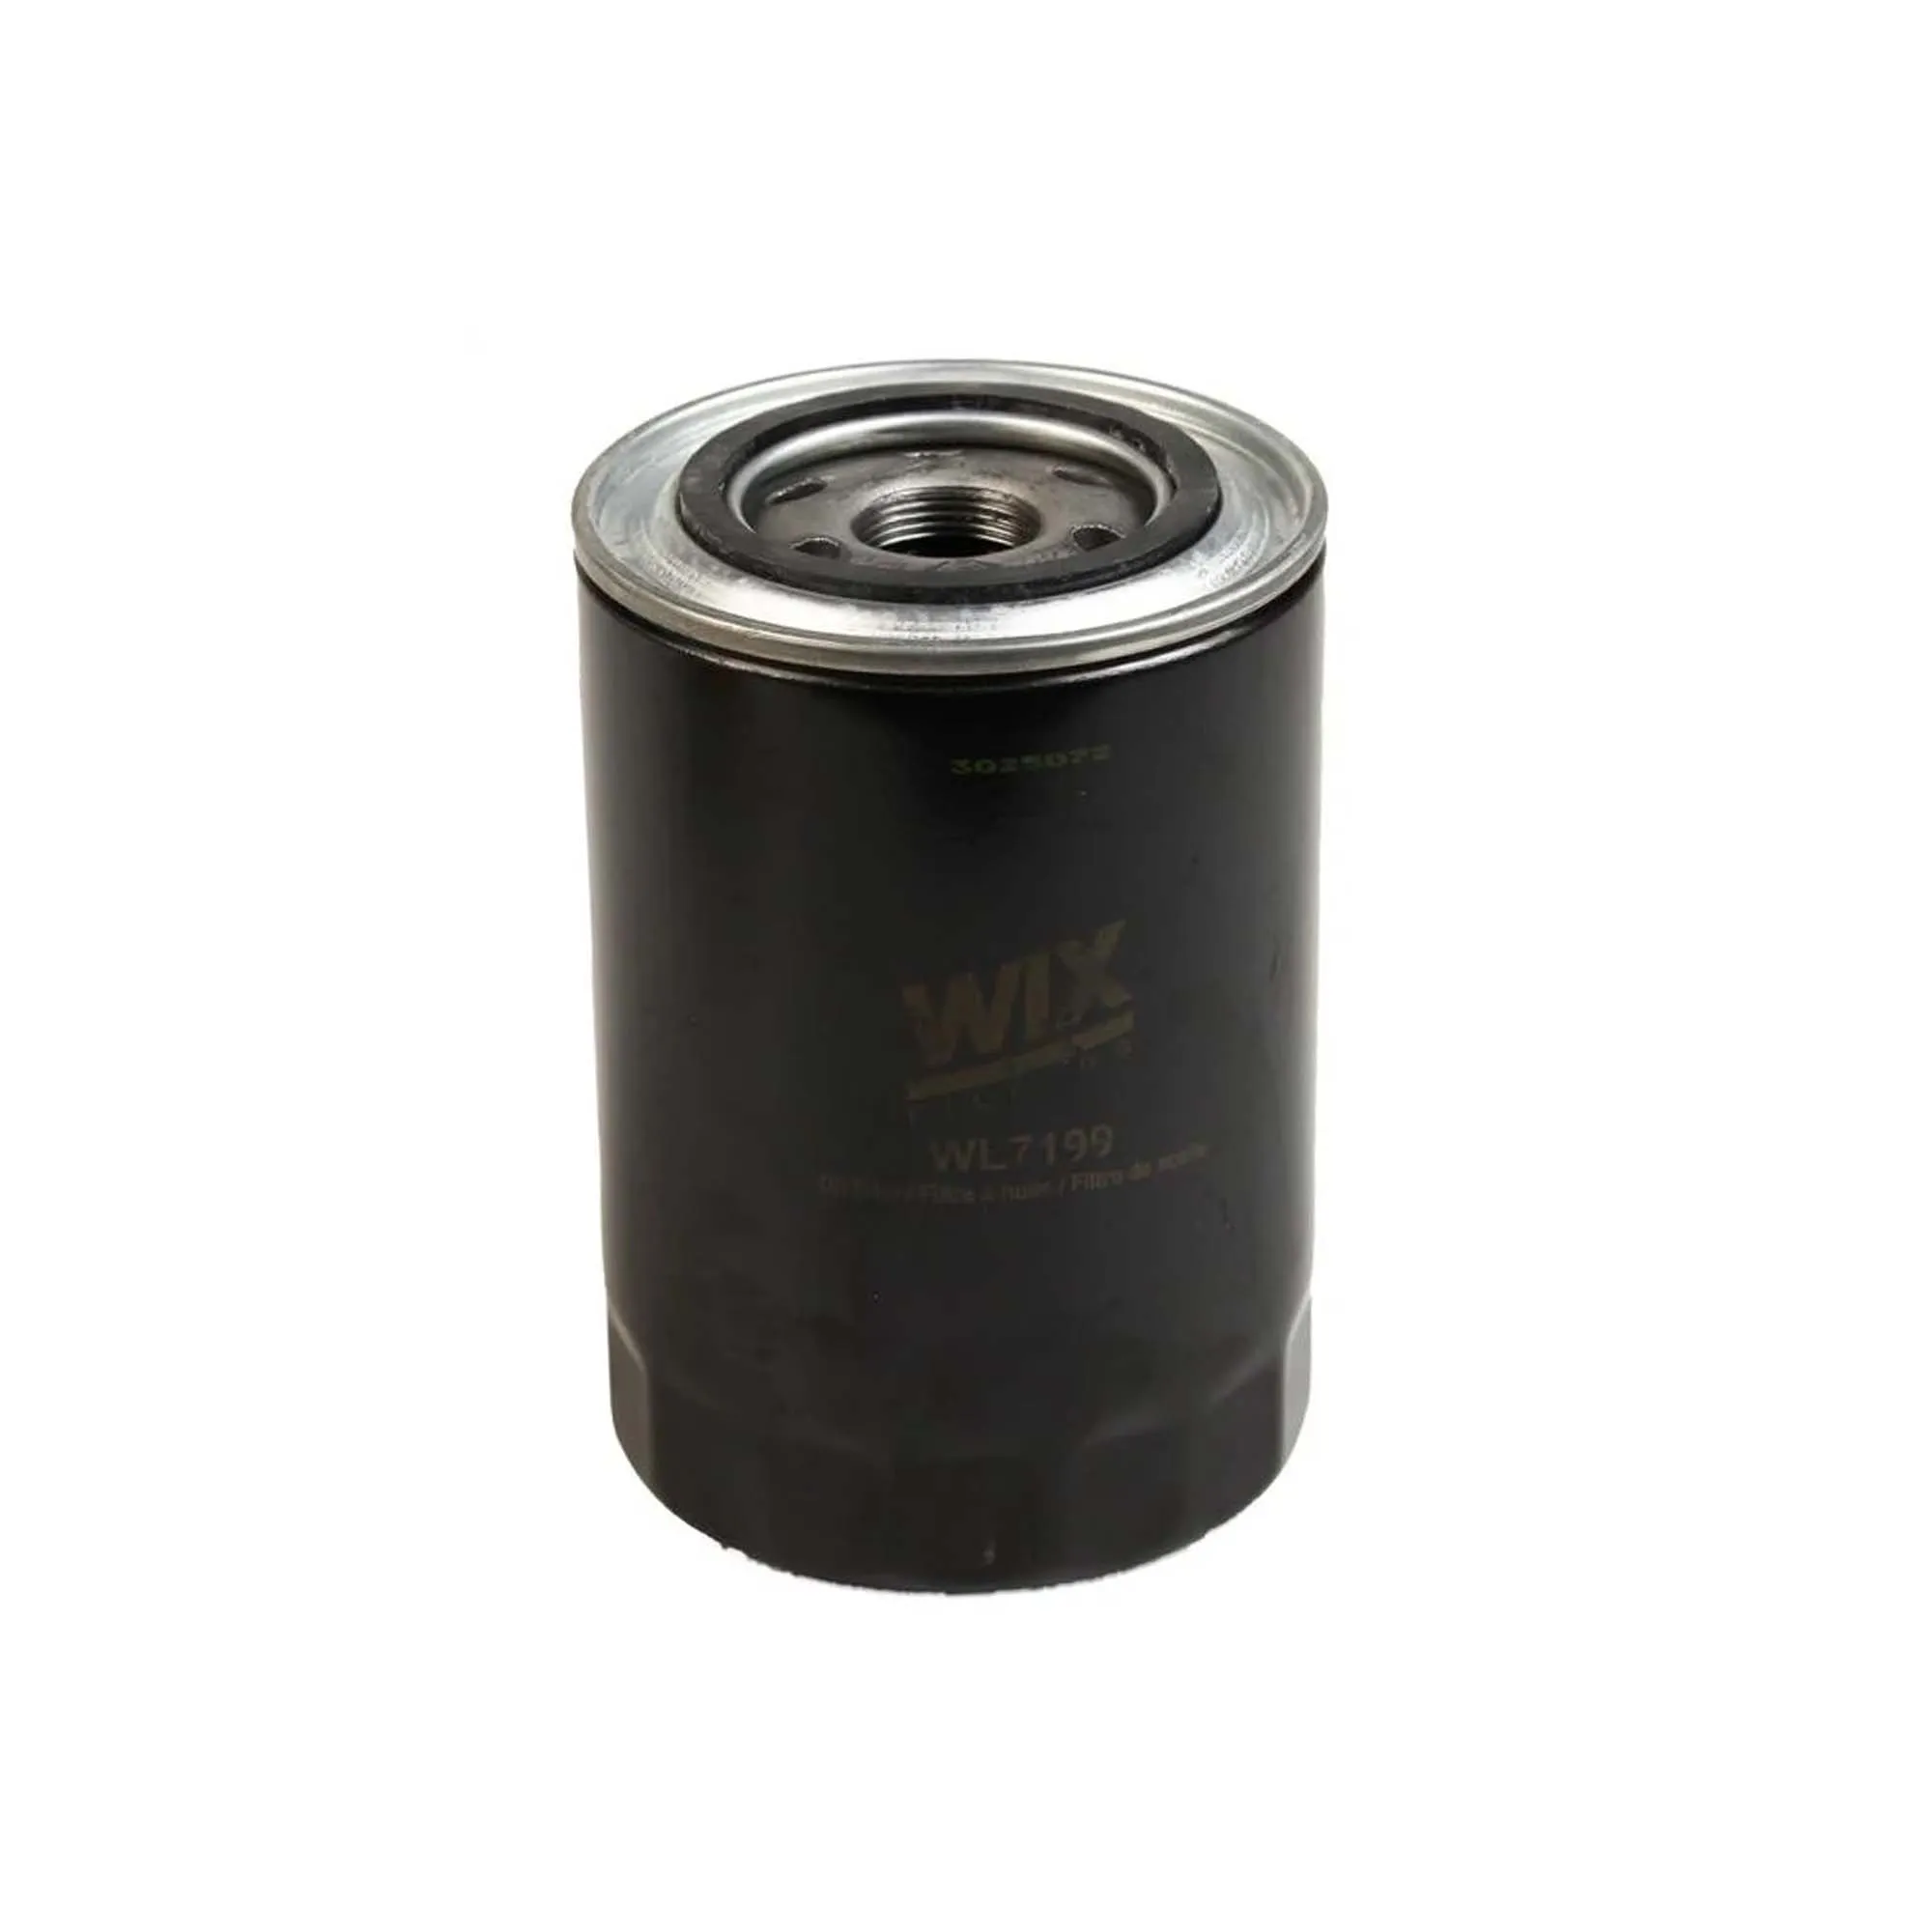 WIX FILTERS WL7199 Масляный фильтр